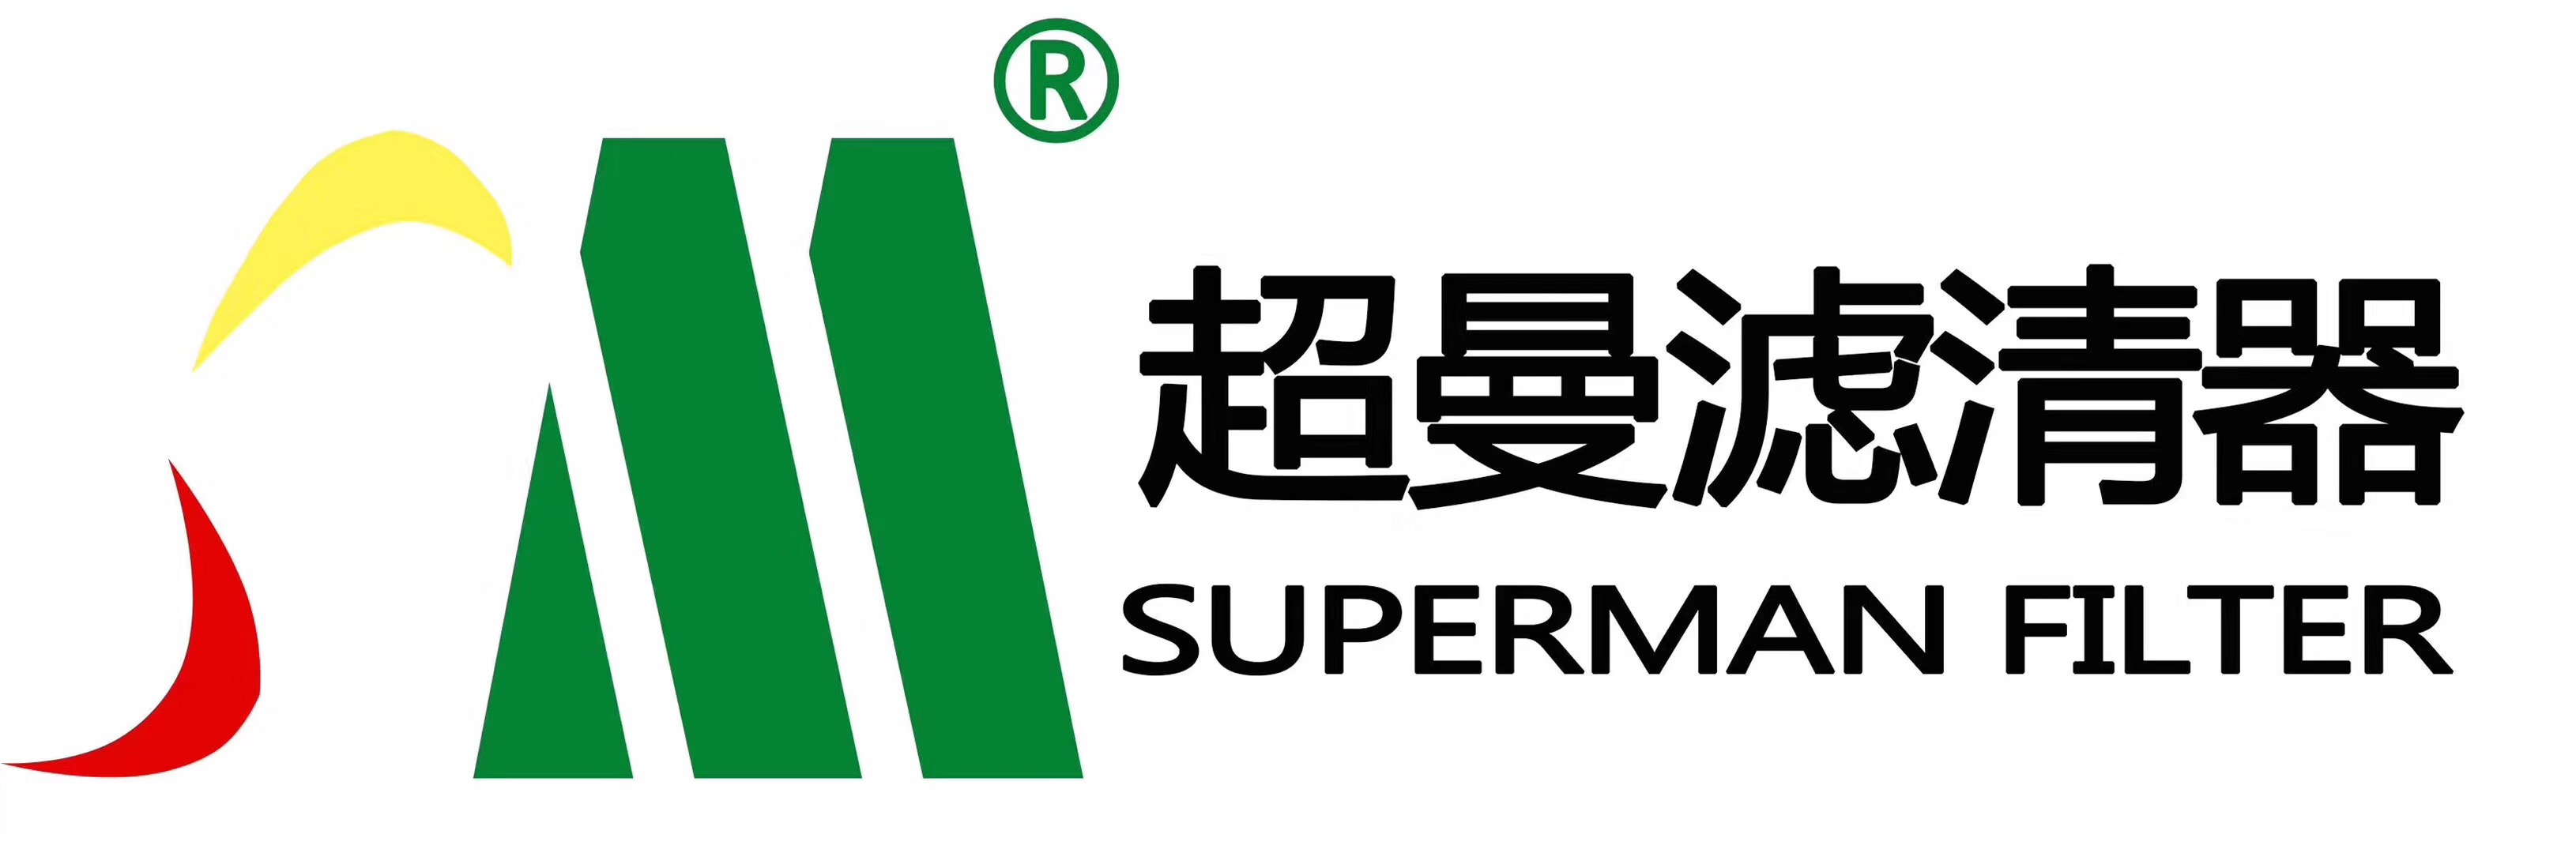 14. 上海超曼.JPG